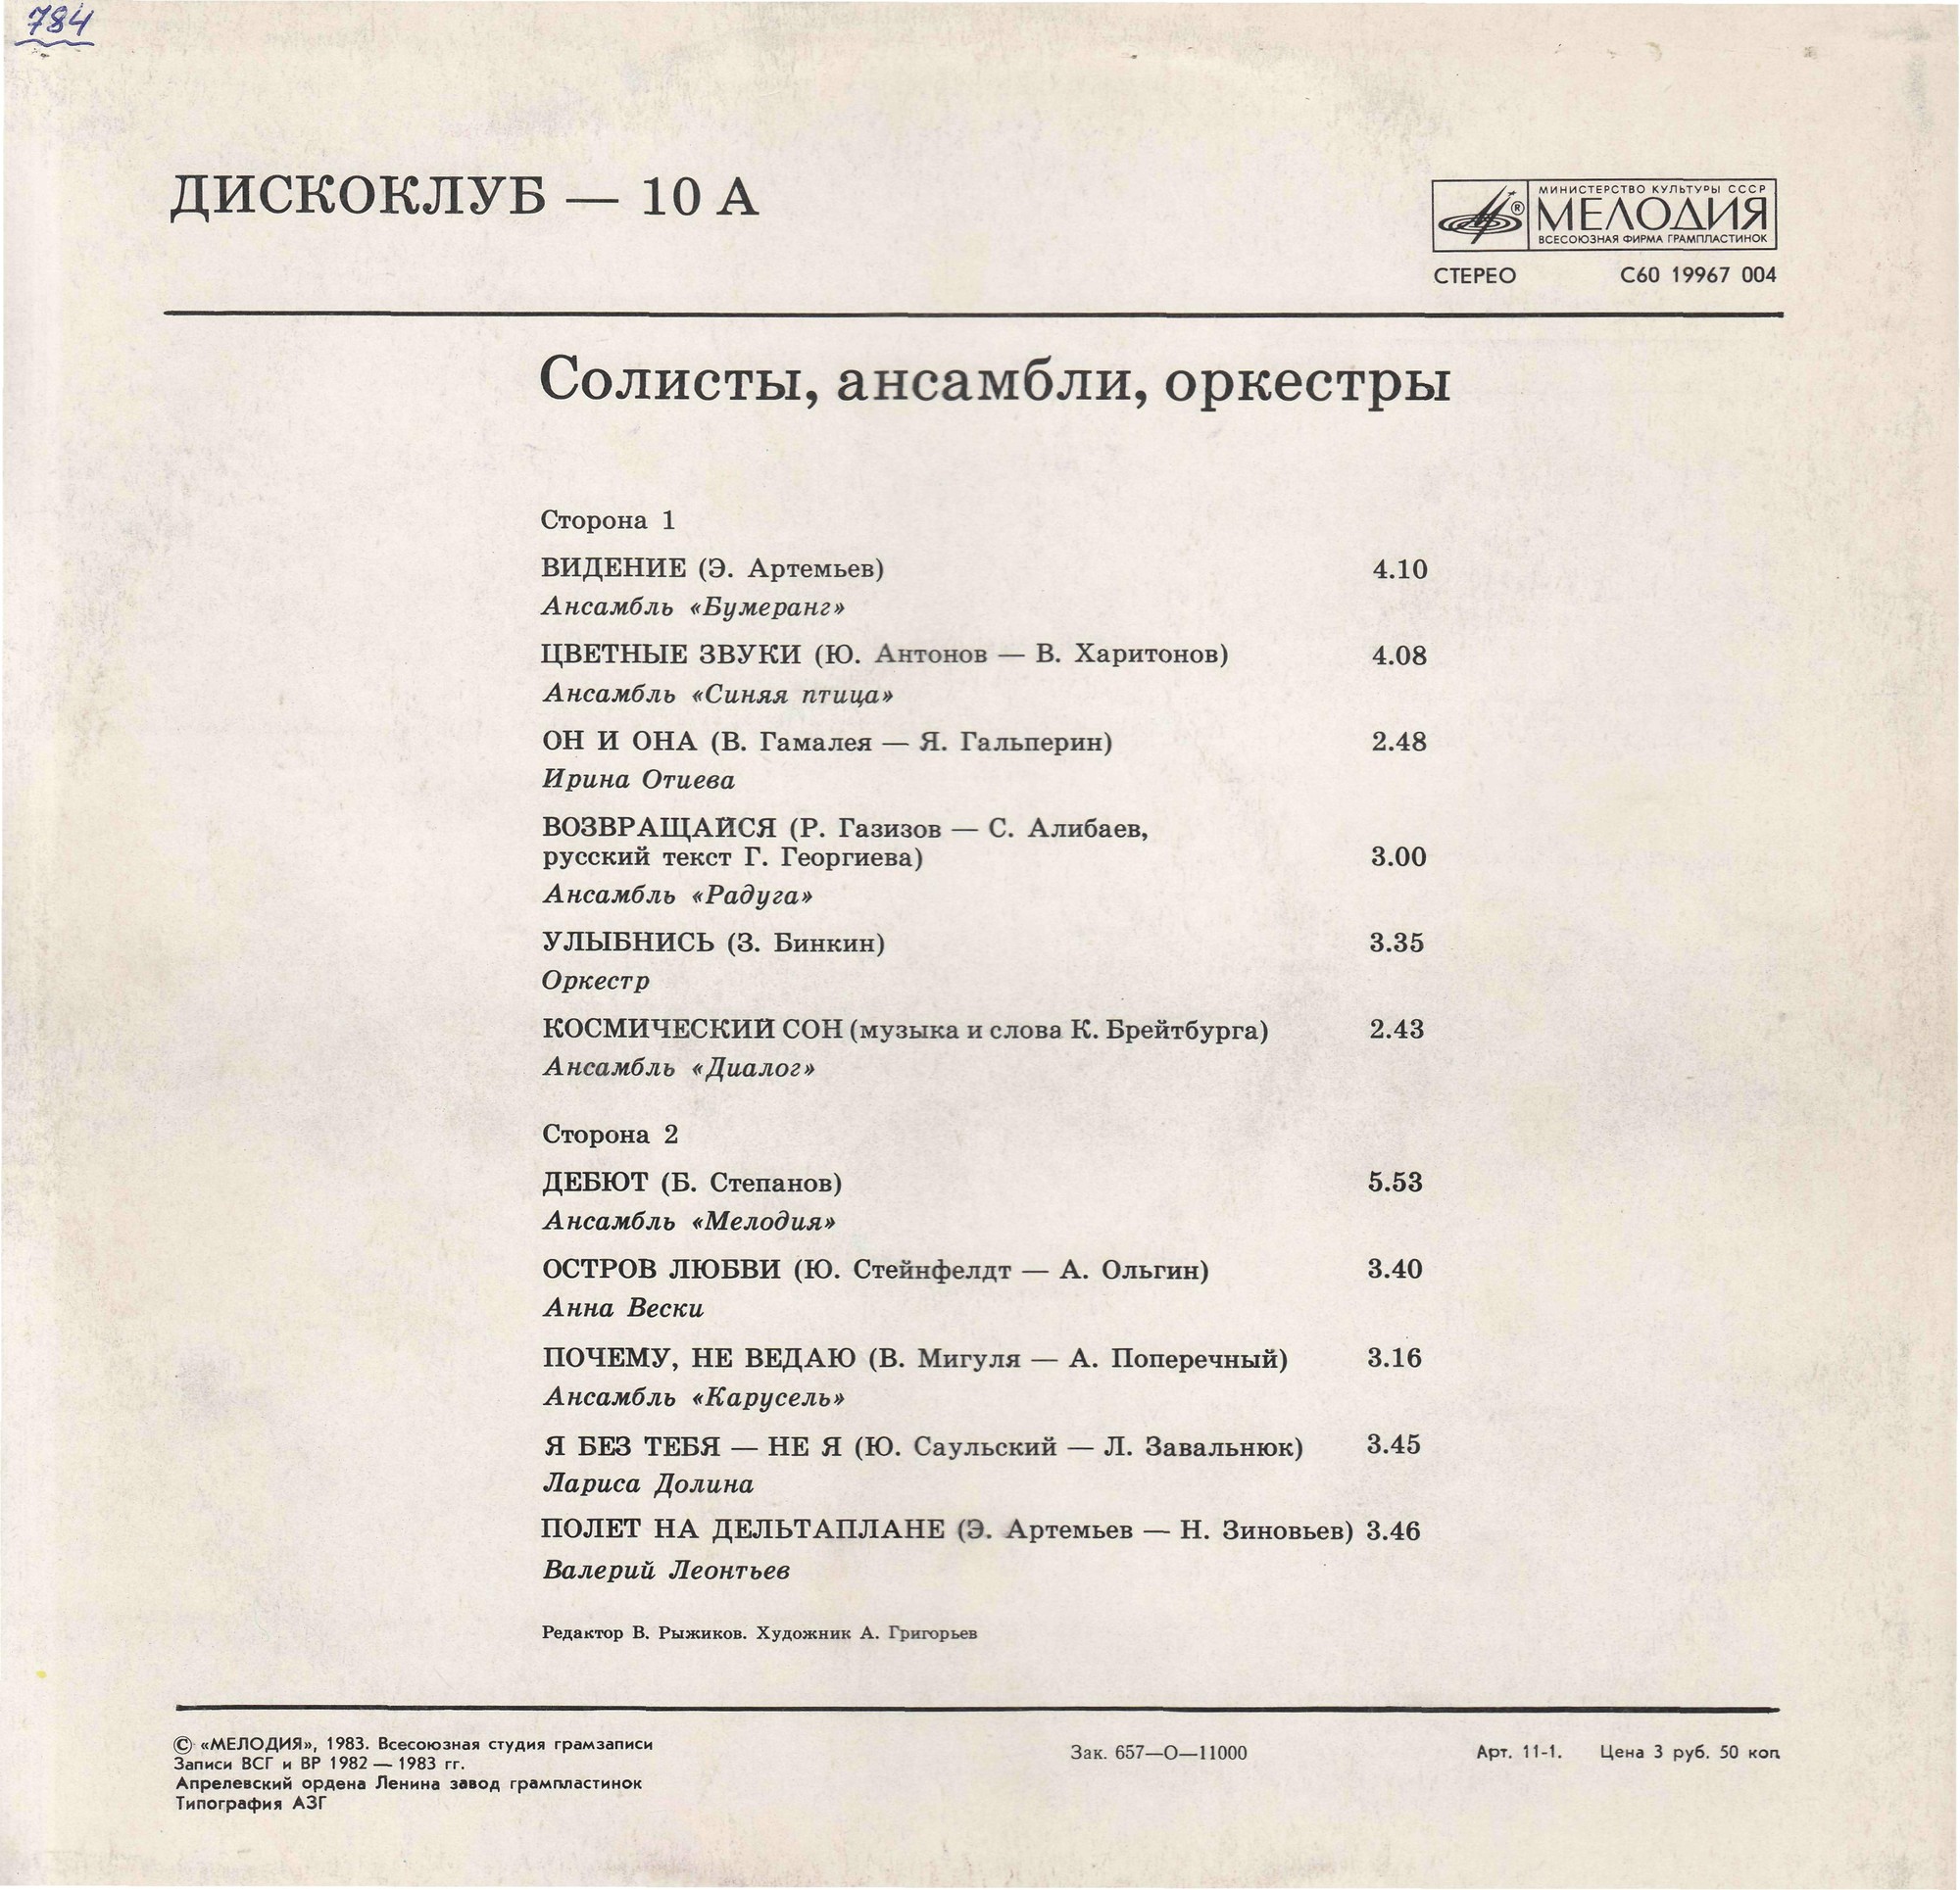 Дискоклуб-10 (А) - Солисты, ансамбли, оркестры